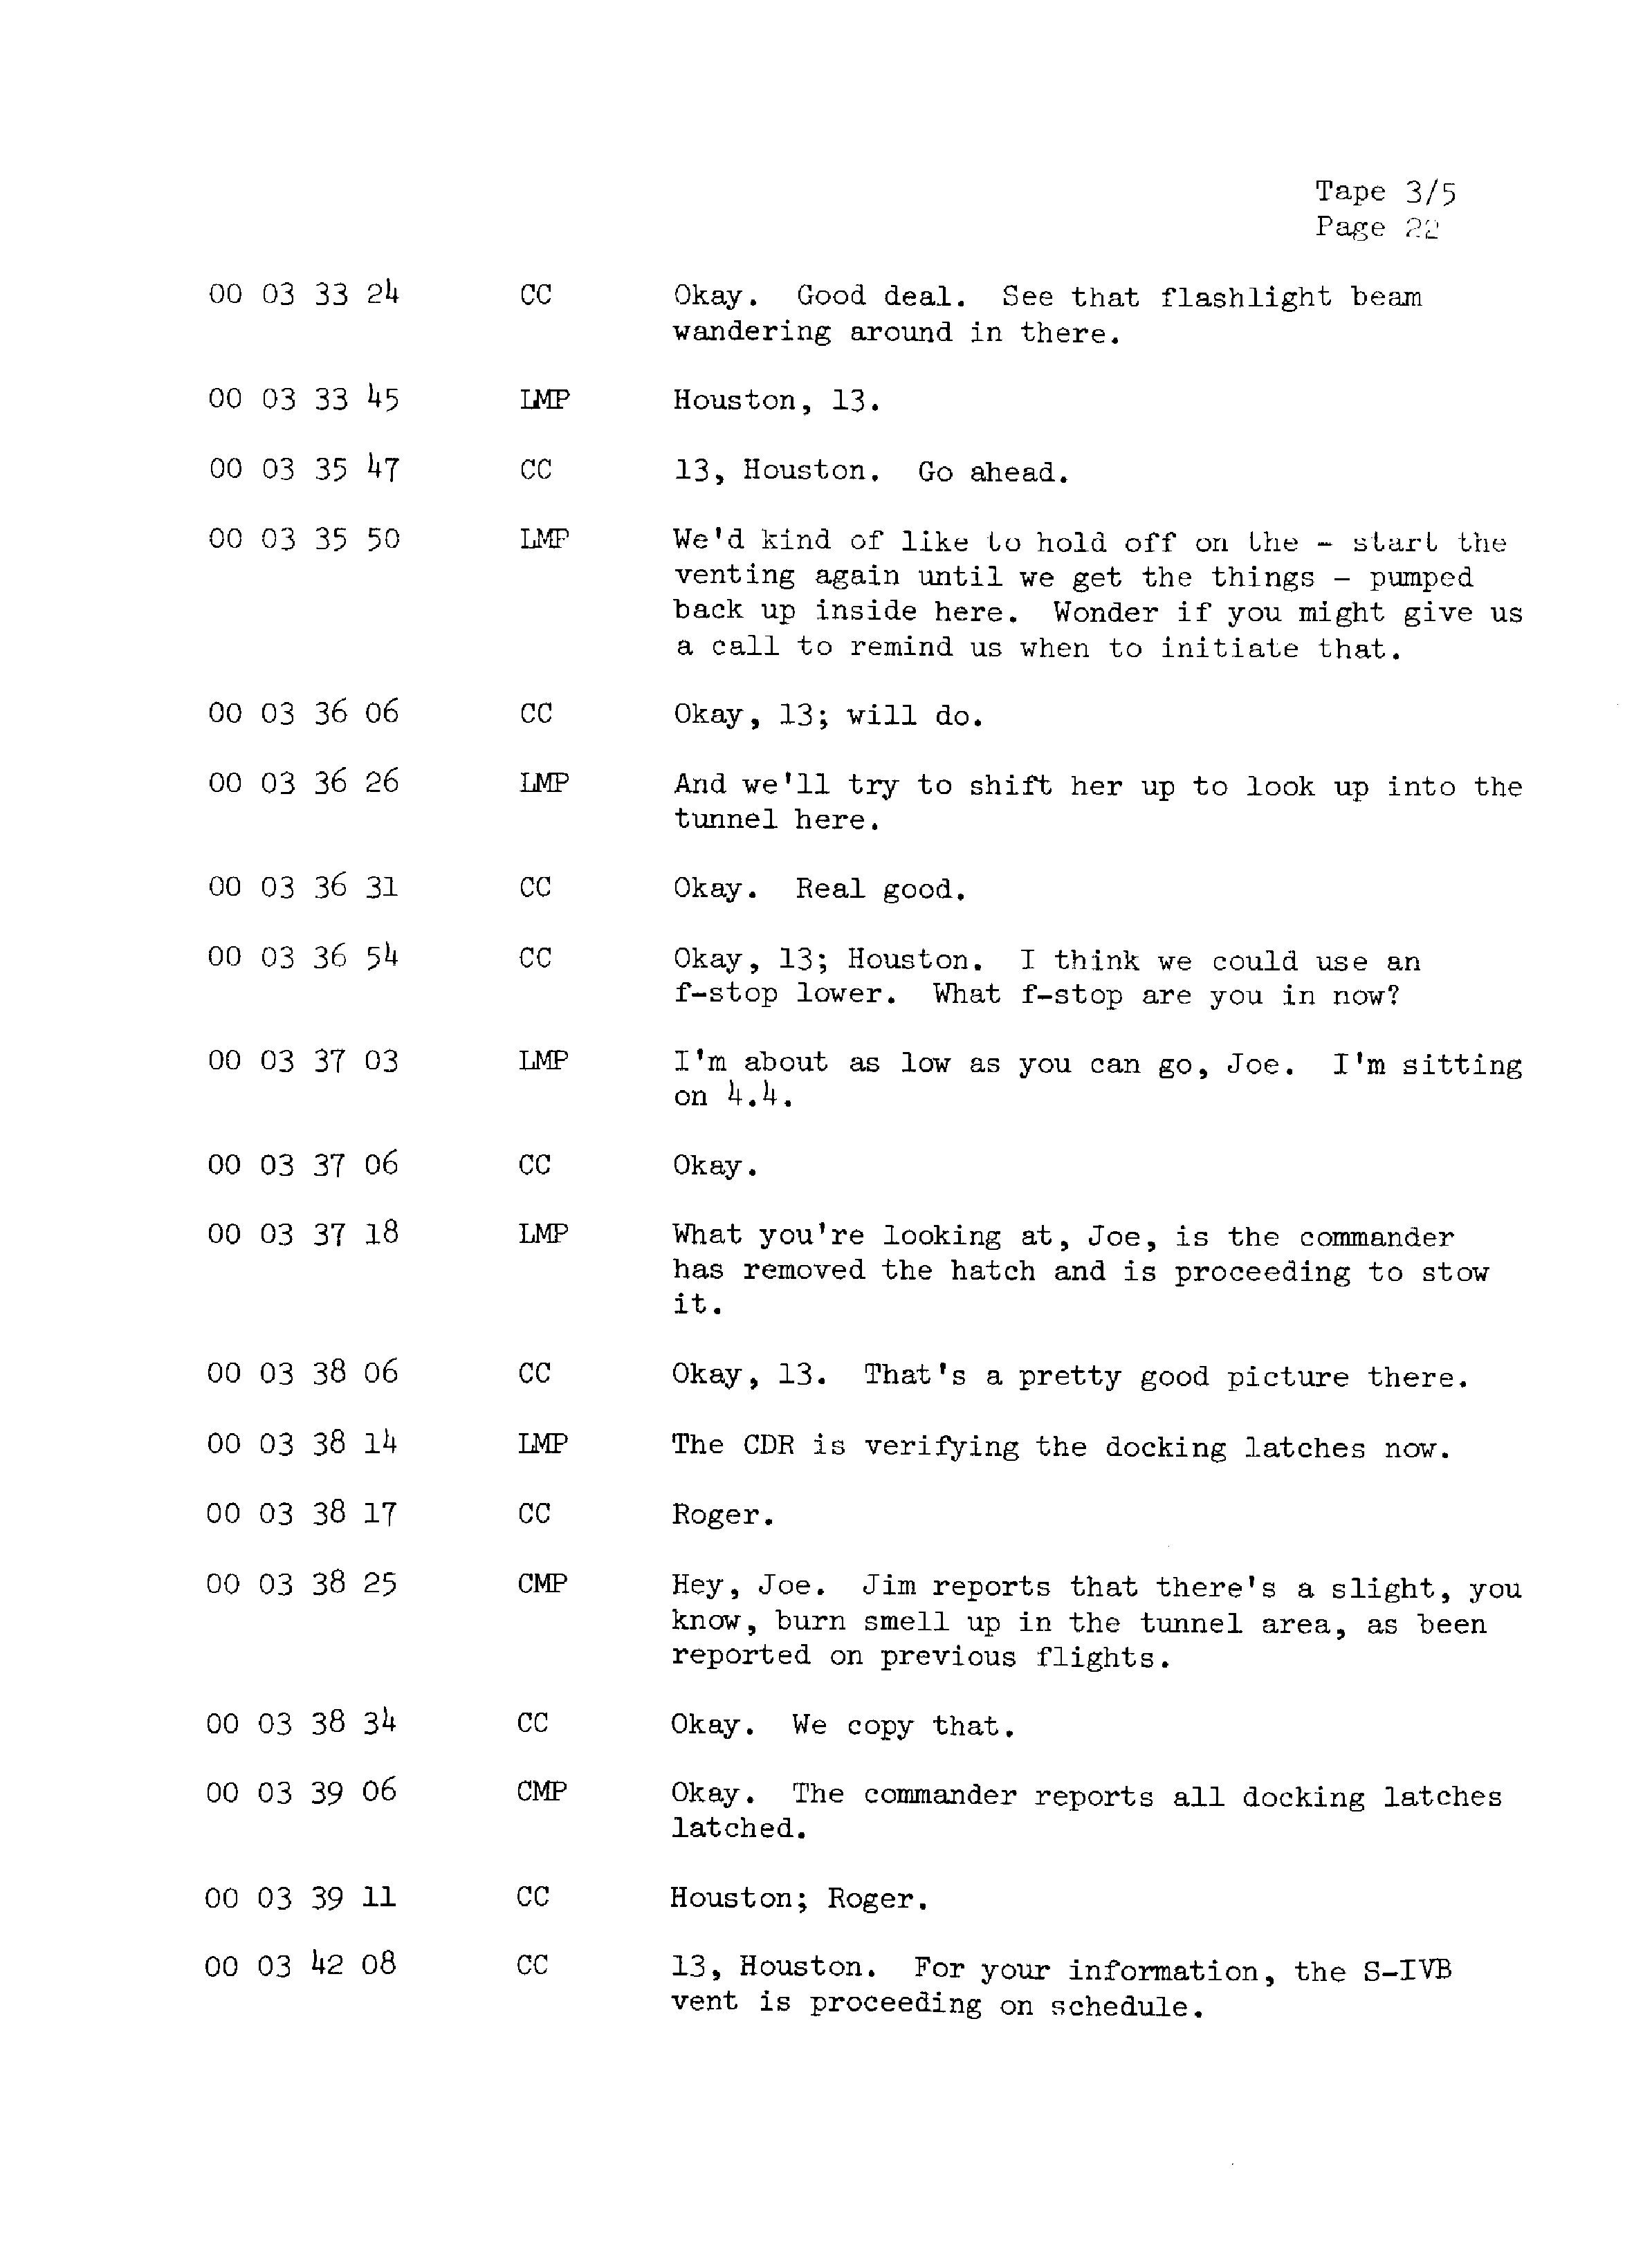 Page 29 of Apollo 13’s original transcript